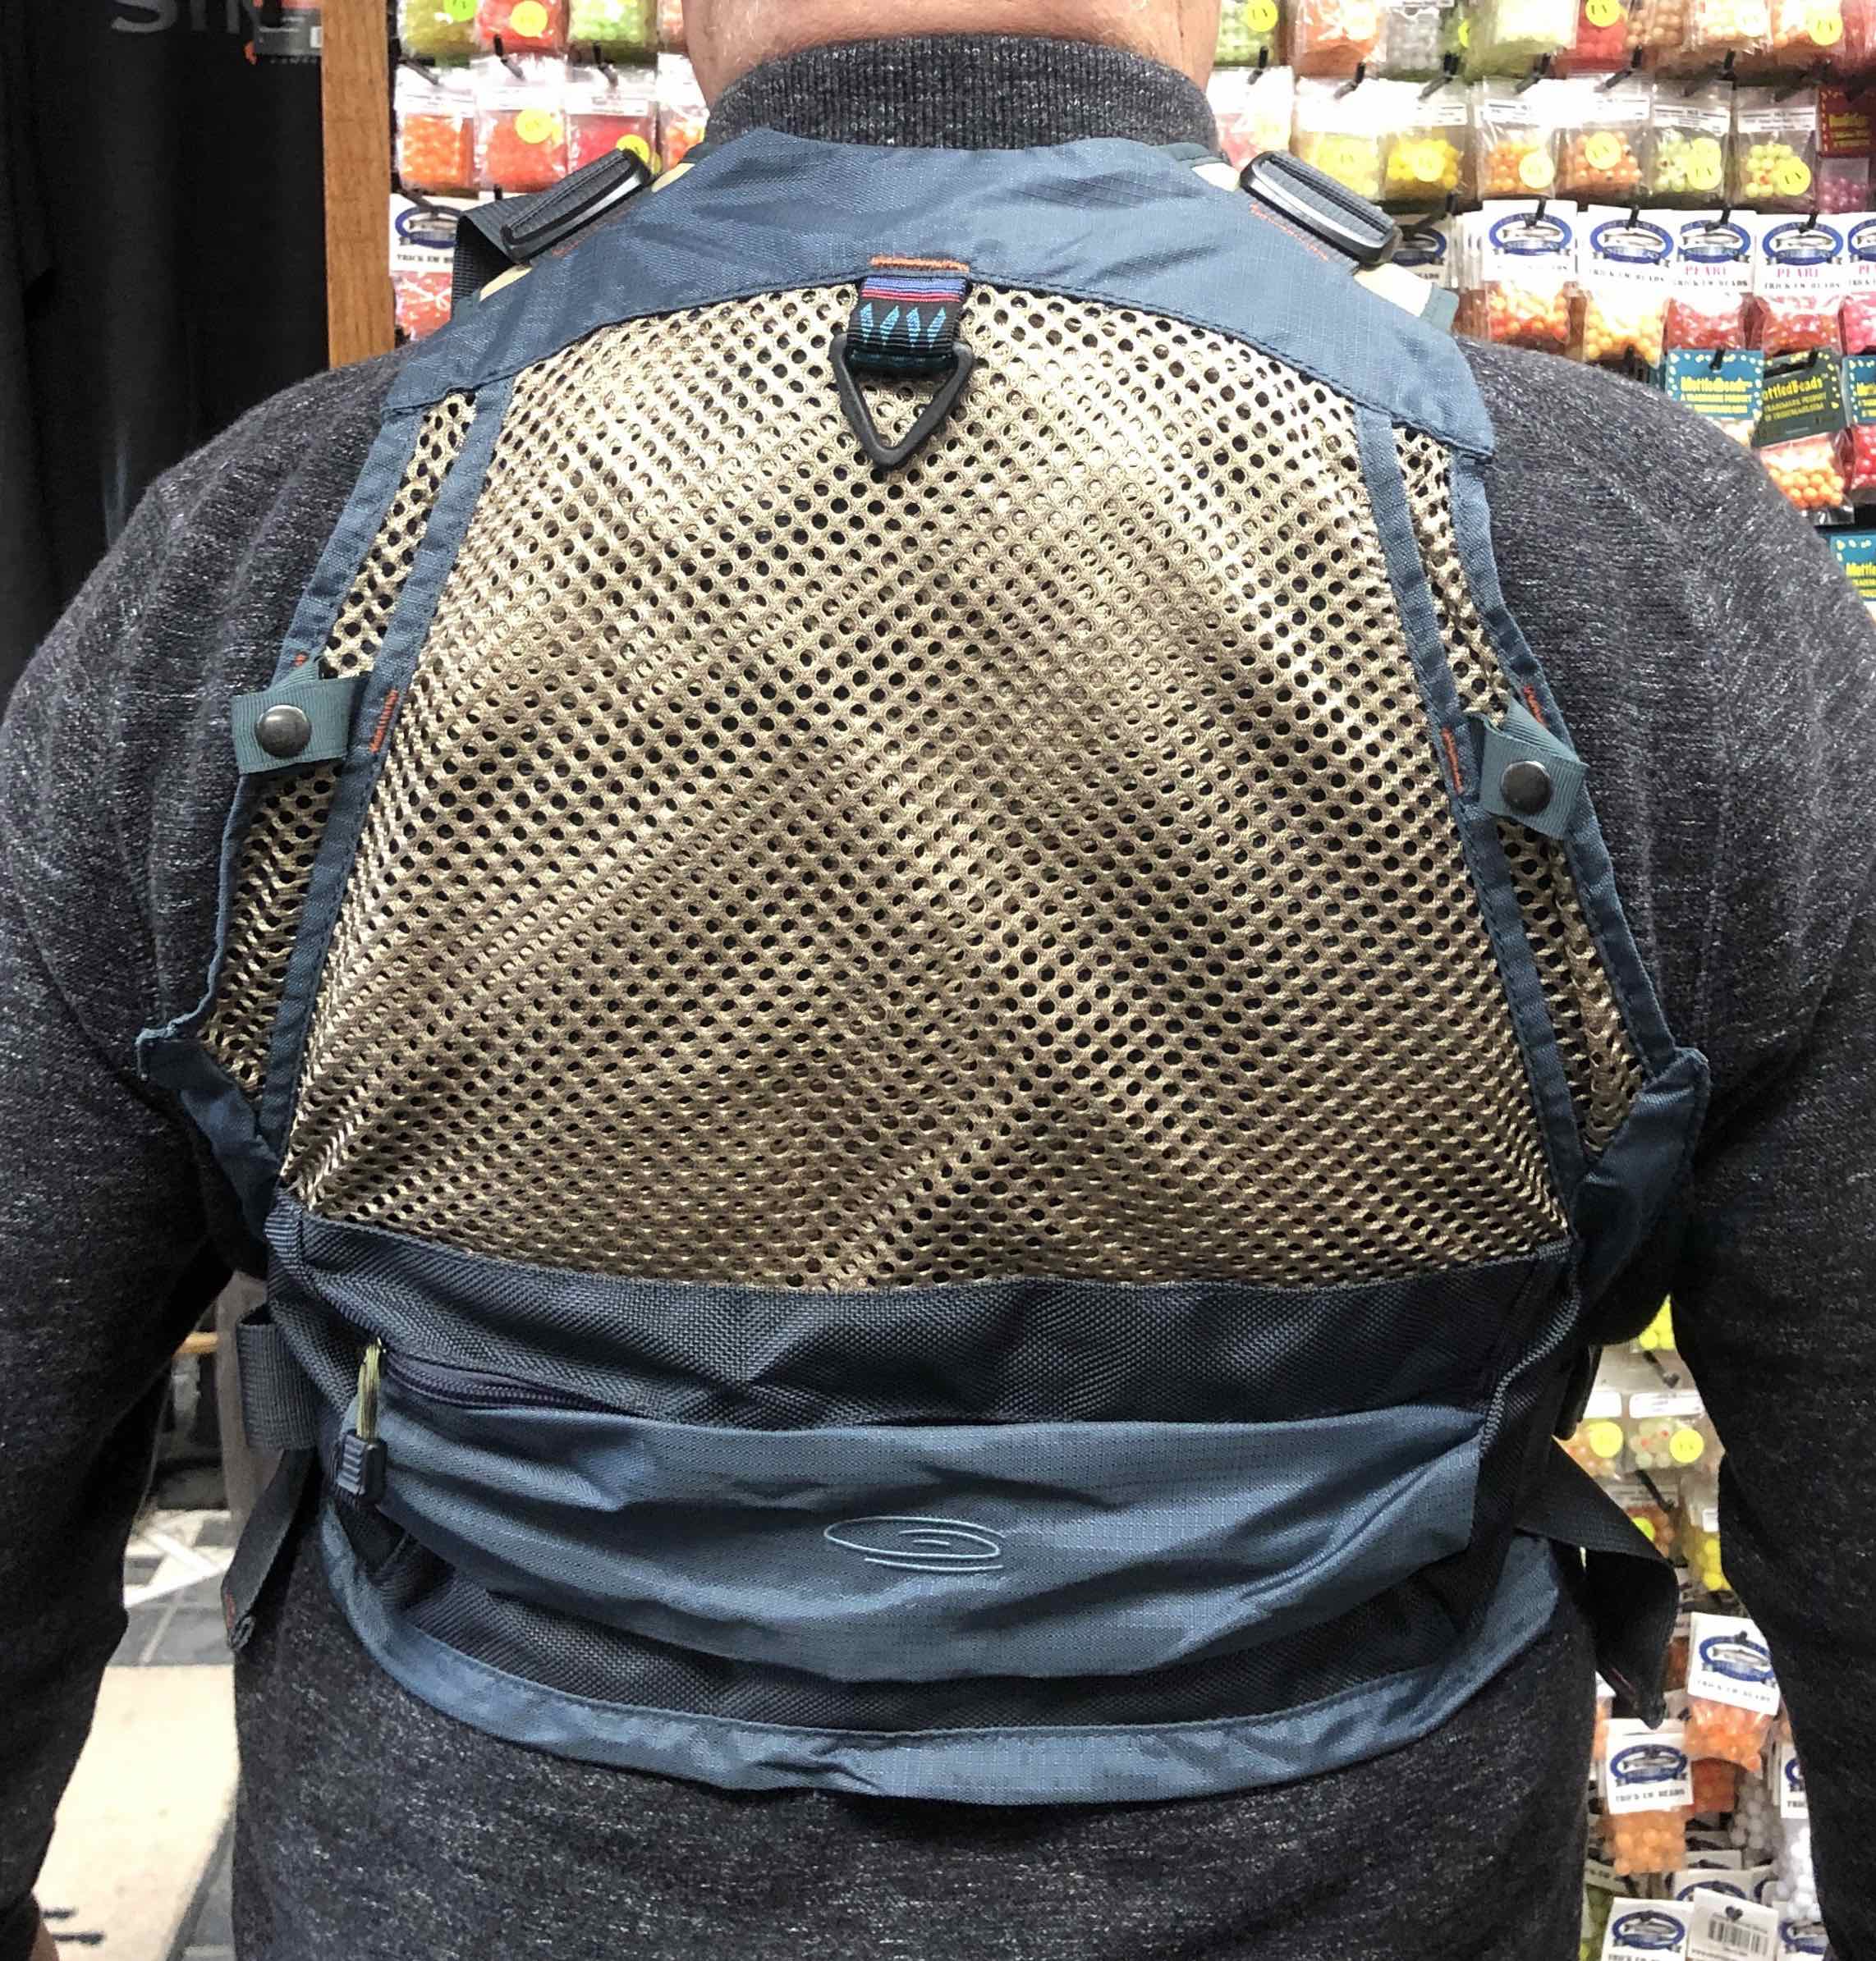 Fishpond Fishing Pack Vest - LIKE NEW! - $100